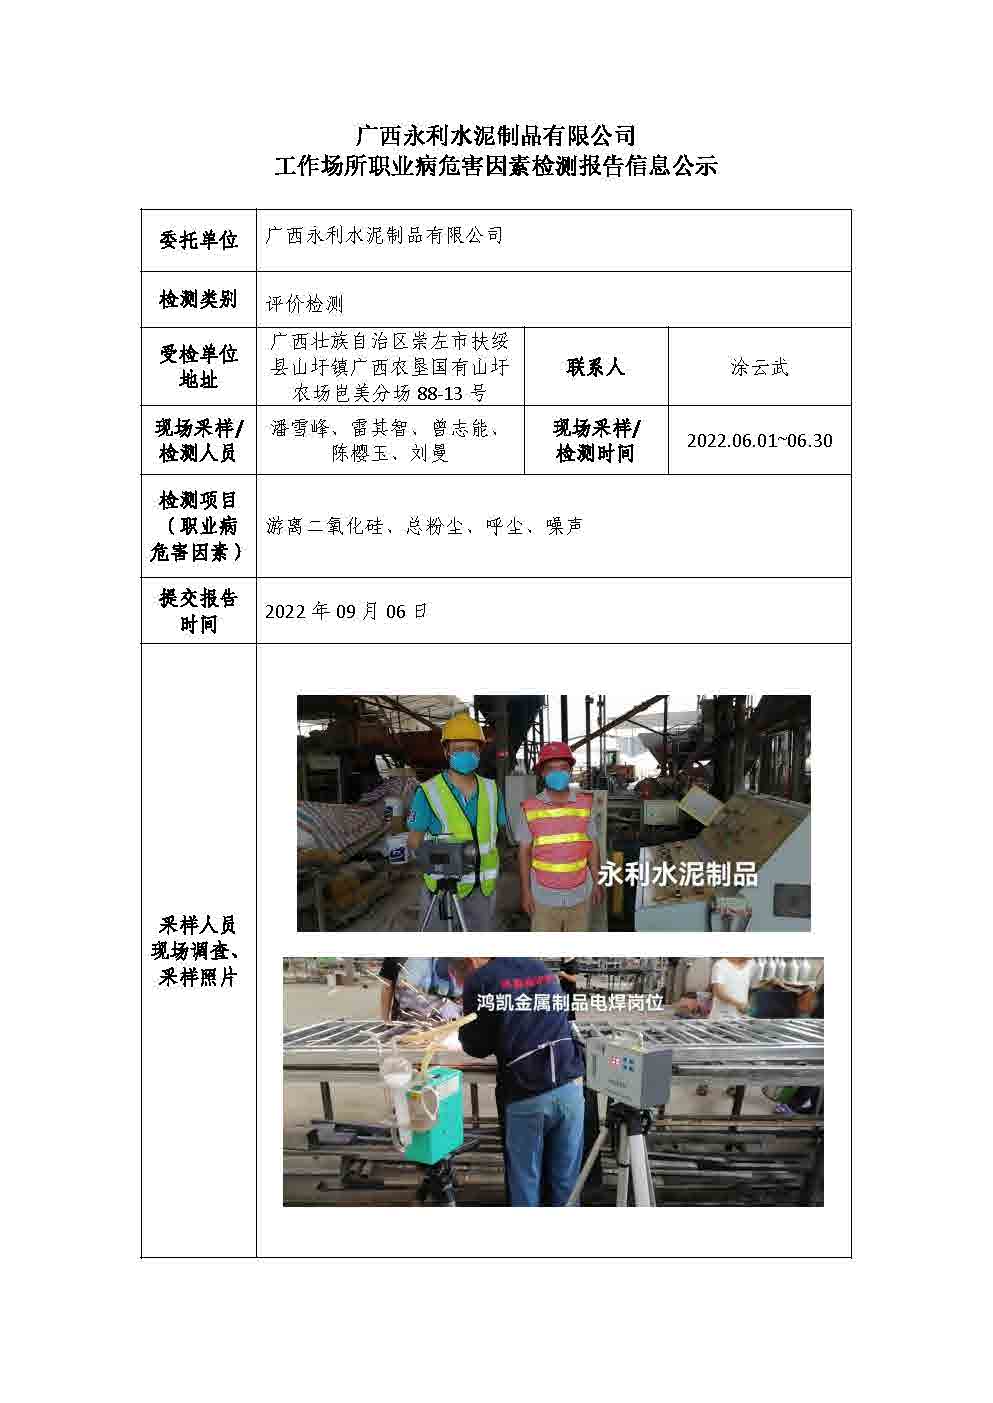 广西永利水泥制品有限公司工作场所职业病危害因素检测报告信息公示